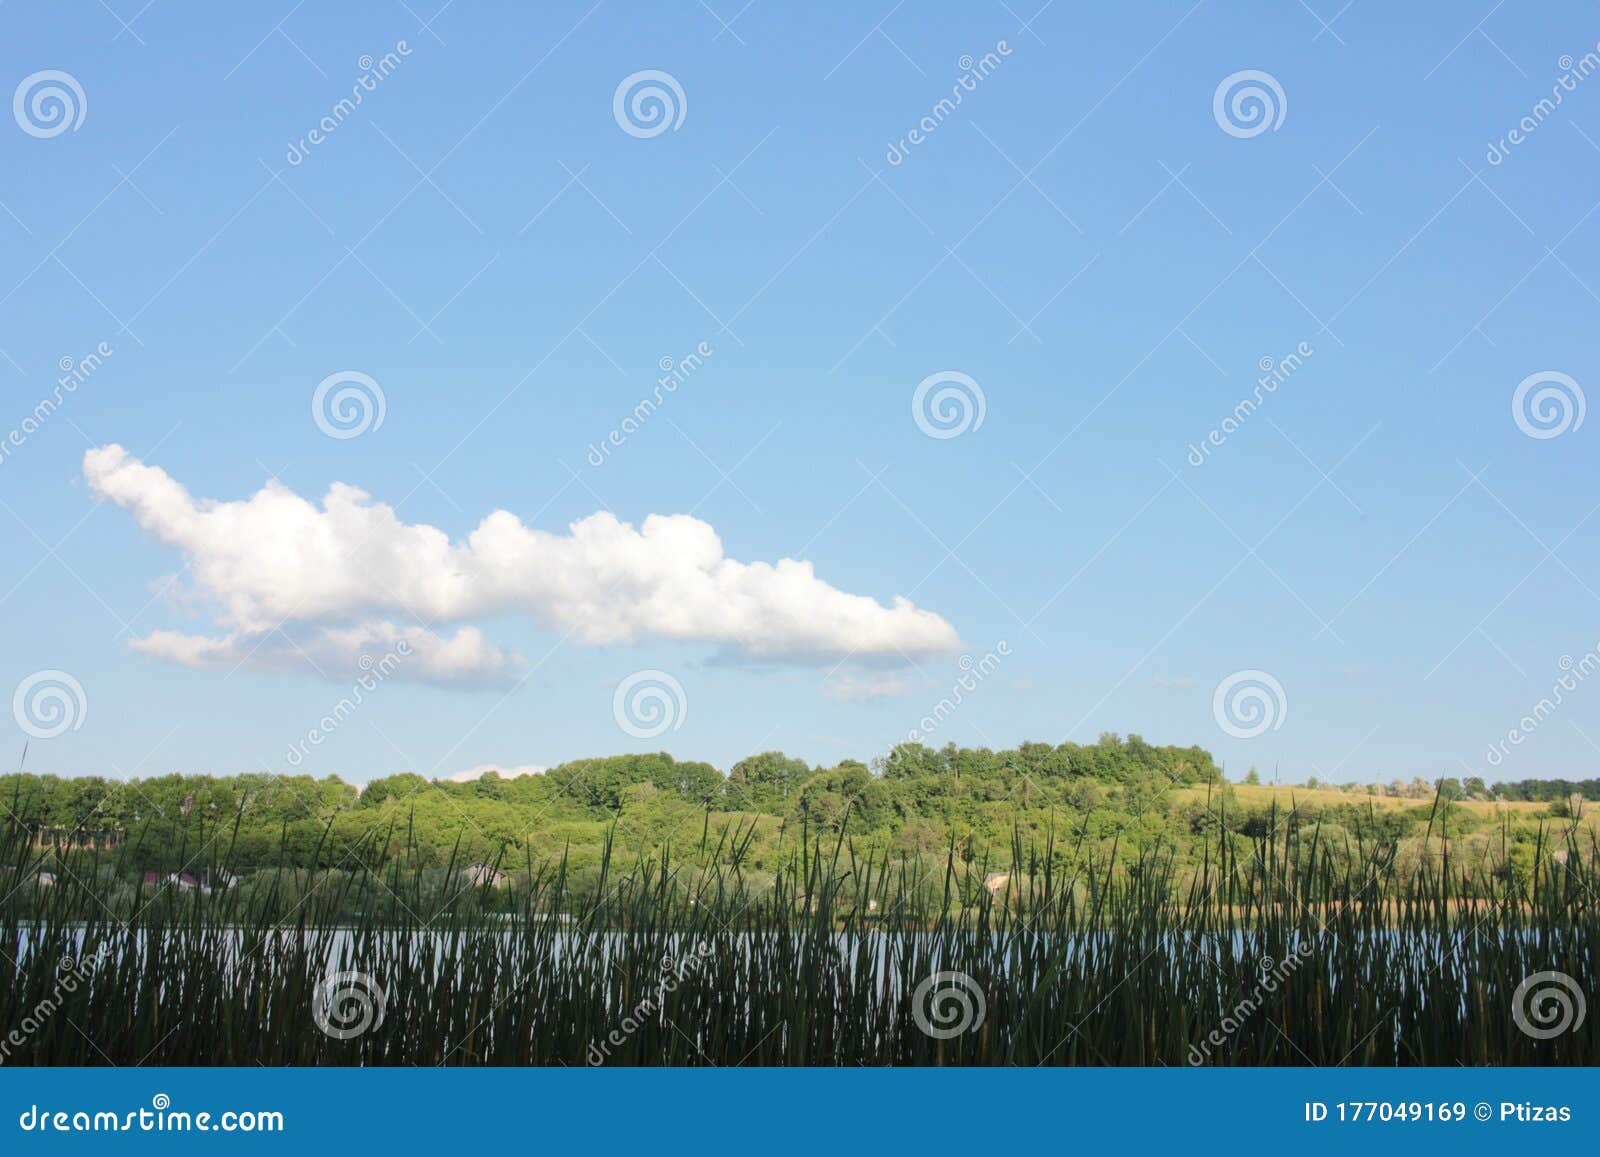 田园诗般的春夏风景 河流 绿色芦苇 树木 蓝天和白云库存图片 图片包括有田园诗般的春夏风景 河流 绿色芦苇 树木 蓝天和白云